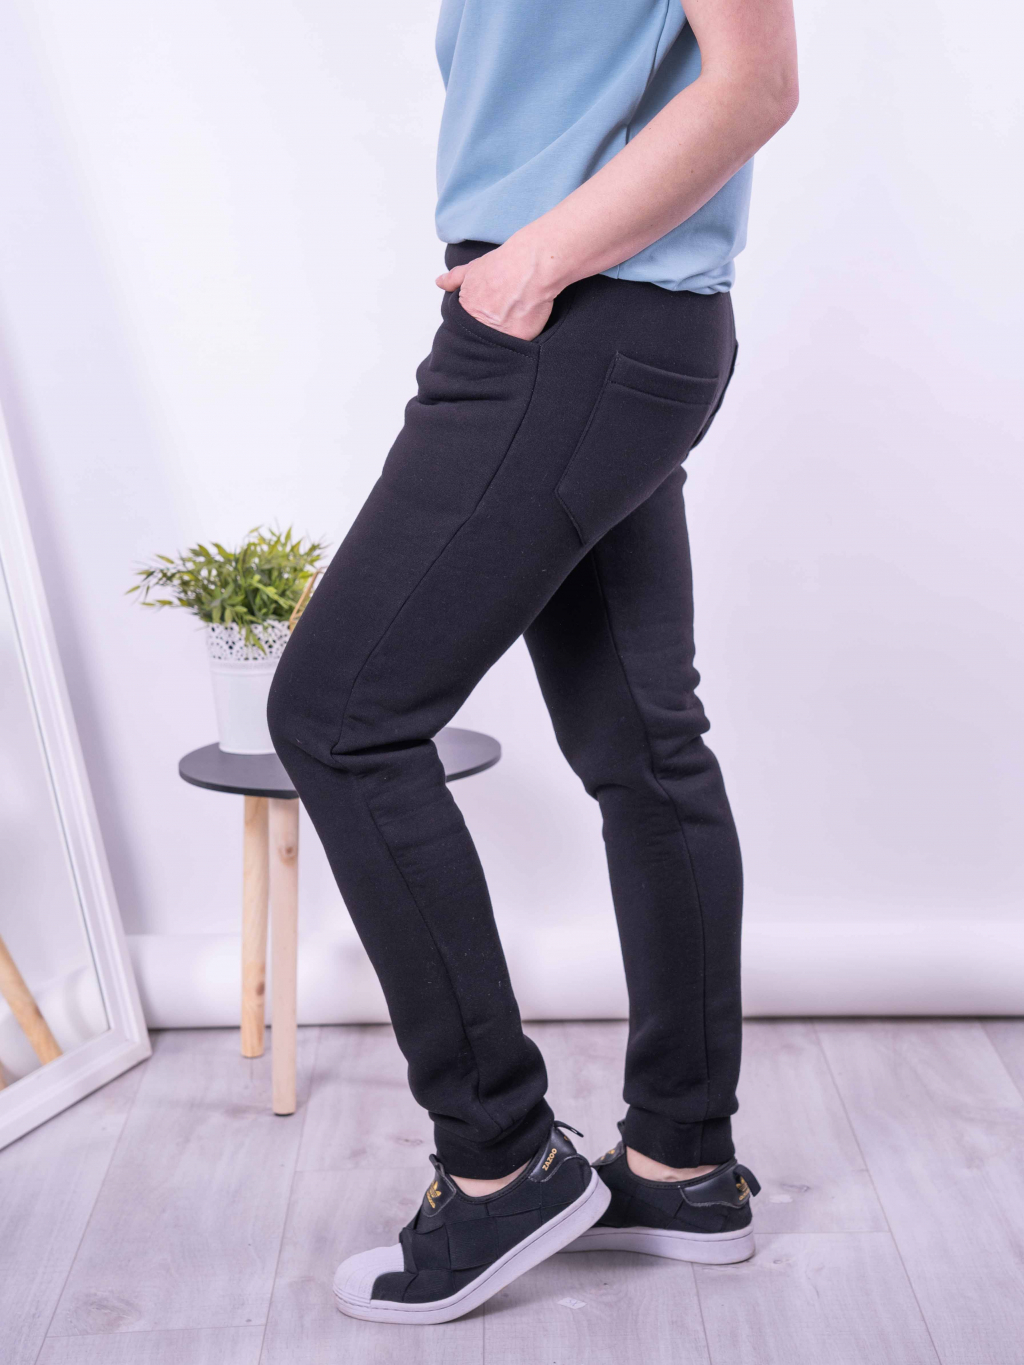 Úpletové dámské teplákové kalhoty Freddie s vnitřním chloupkem v barvě černá pohled ze strany